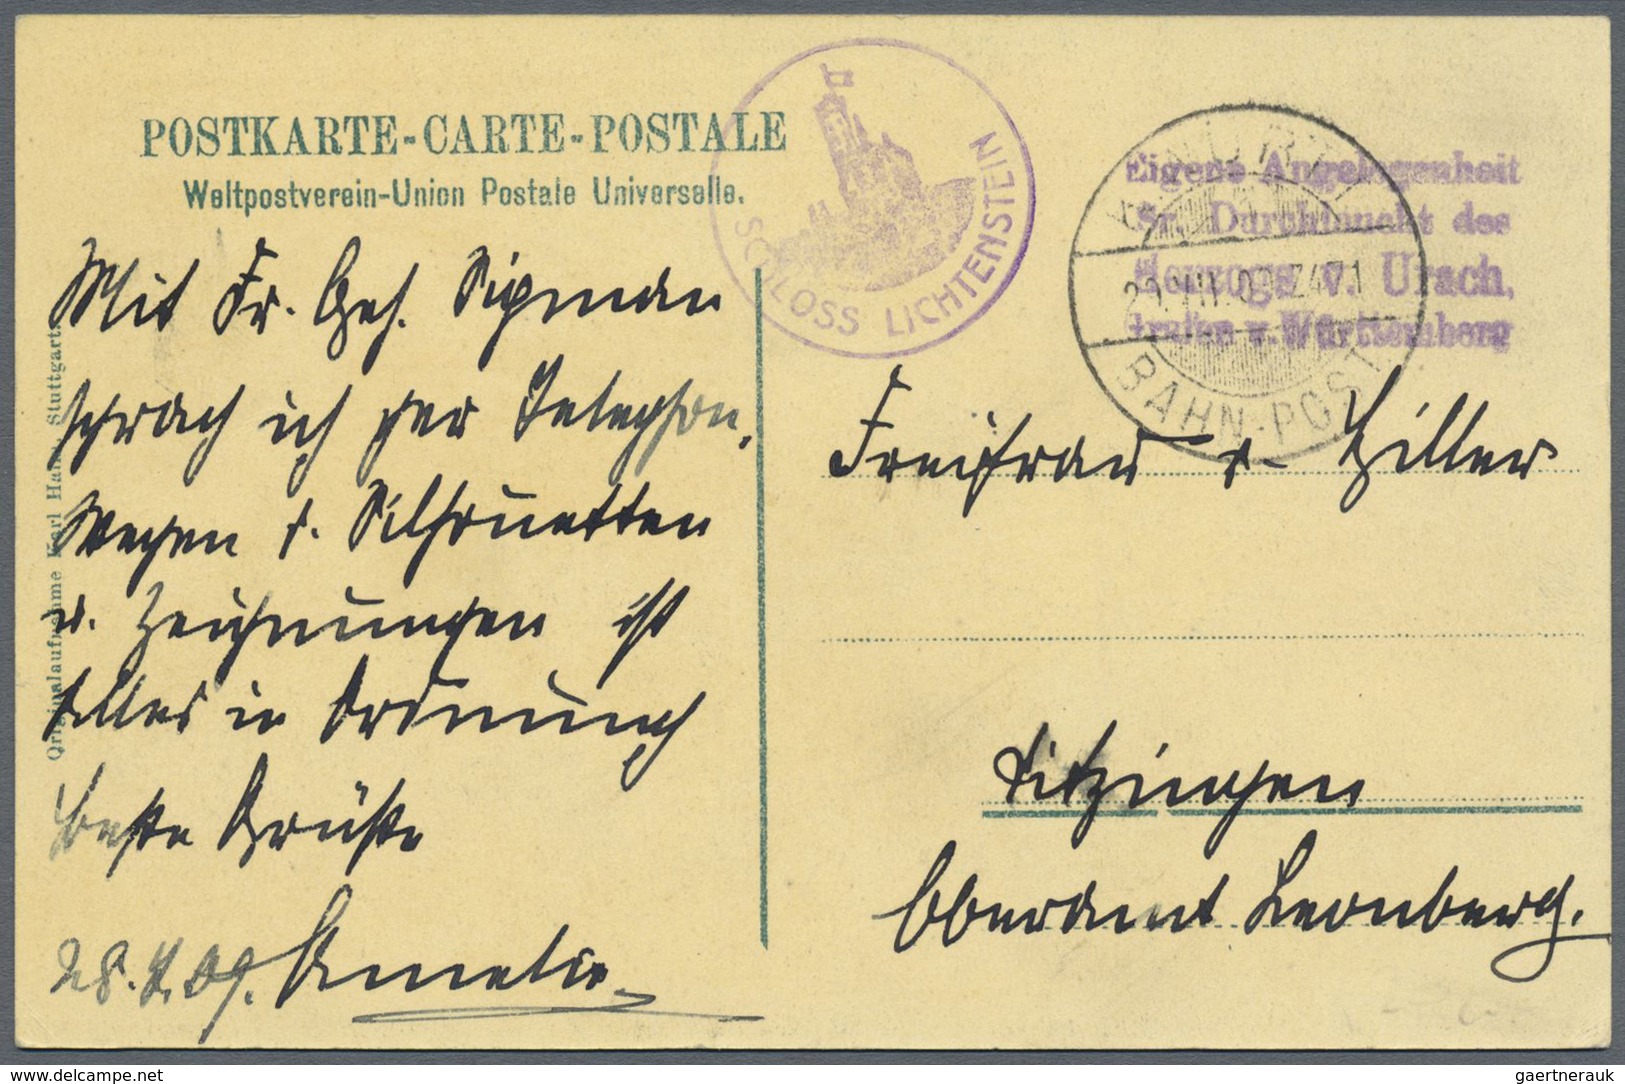 Br Württemberg - Besonderheiten: 1902/1917, fünf portofreie Briefe und Karten "Angelegenheit Sr. Durchl